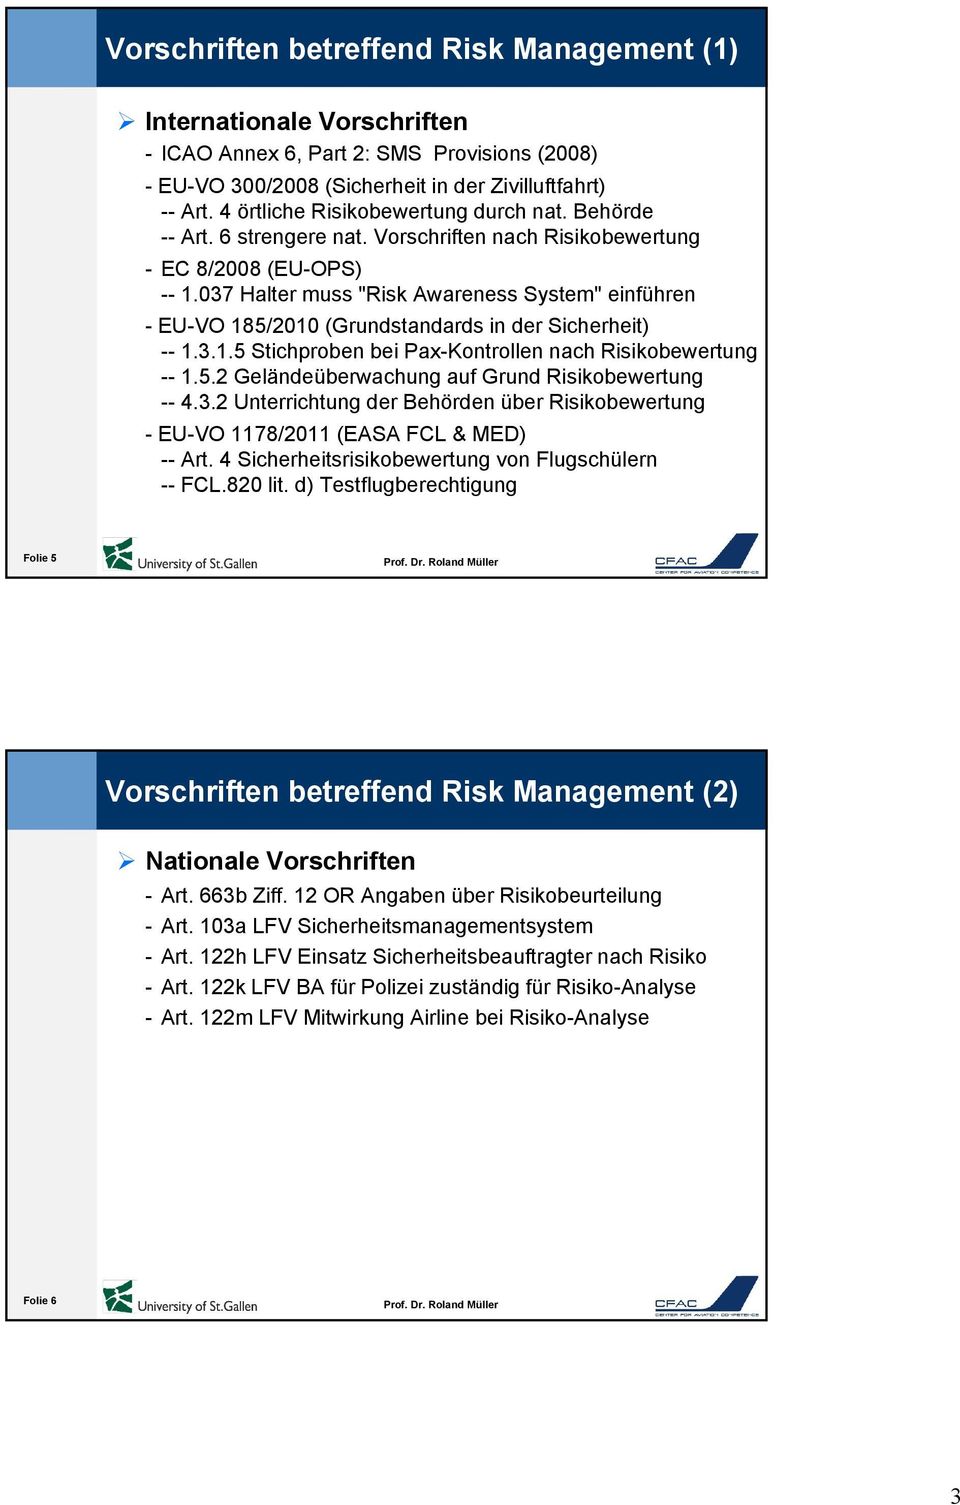 037 Halter muss "Risk Awareness System" einführen - EU-VO 185/2010 (Grundstandards in der Sicherheit) -- 1.3.1.5 Stichproben bei Pax-Kontrollen nach Risikobewertung -- 1.5.2 Geländeüberwachung auf Grund Risikobewertung -- 4.